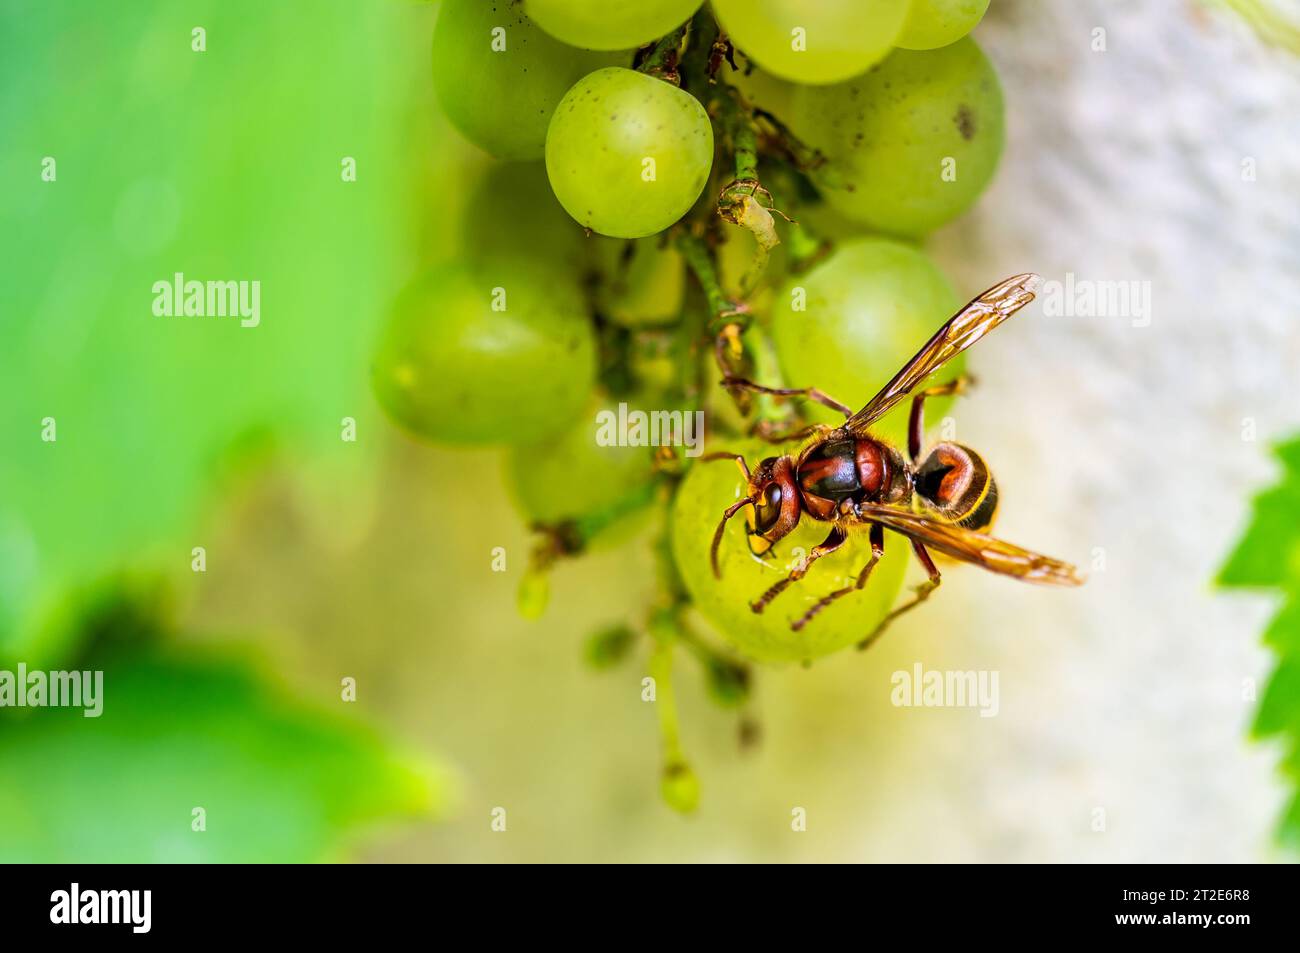 Il calabrone giallo (nome latino Vespa Crabro) sta mangiando frutta d'uva in vigna. Vista macro ravvicinata dell'insetto. Foto Stock